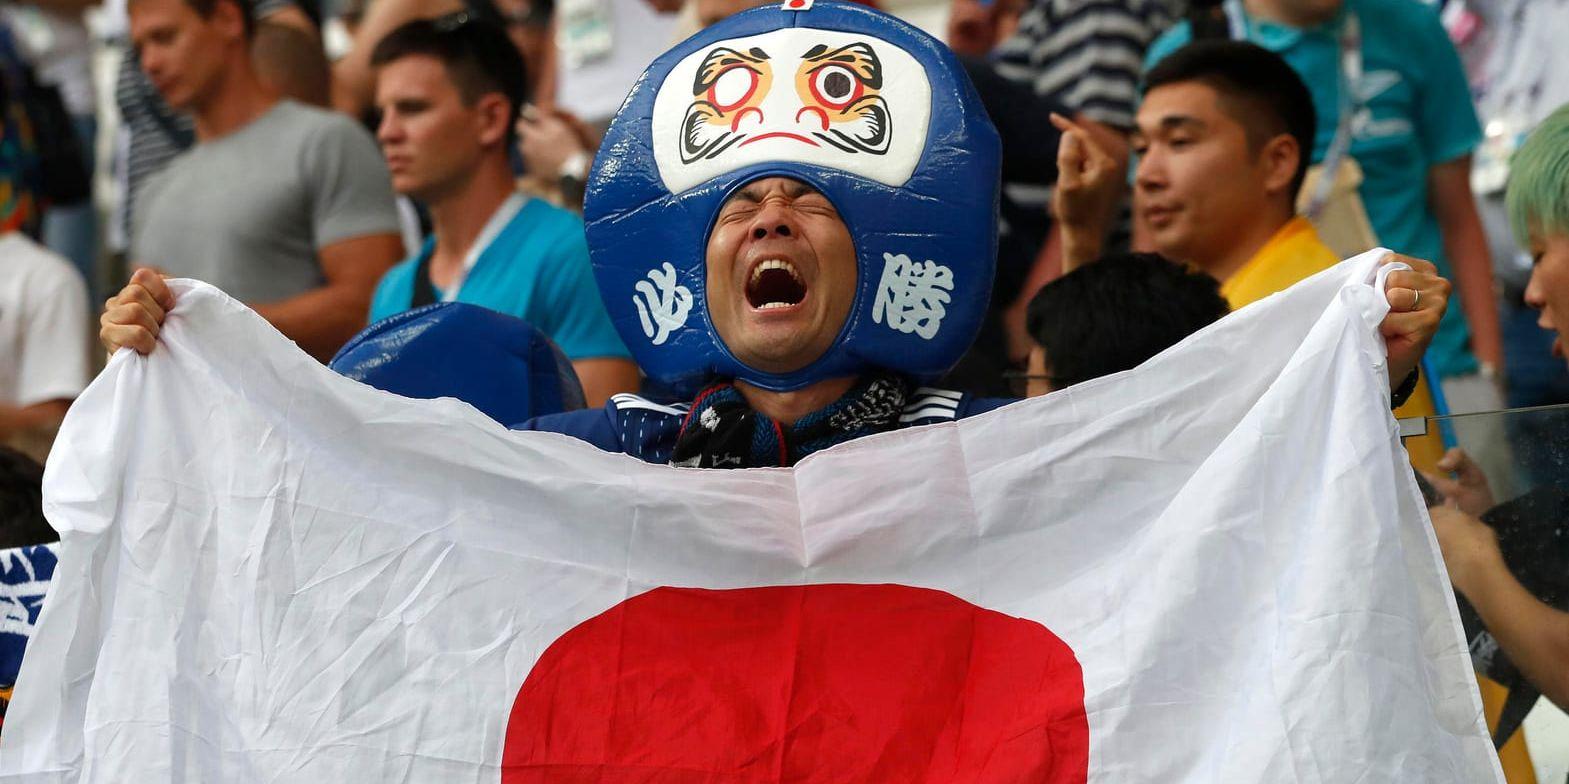 Japansk glädje efter förlustmatchen mot Polen, som ändå innebar avancemang.